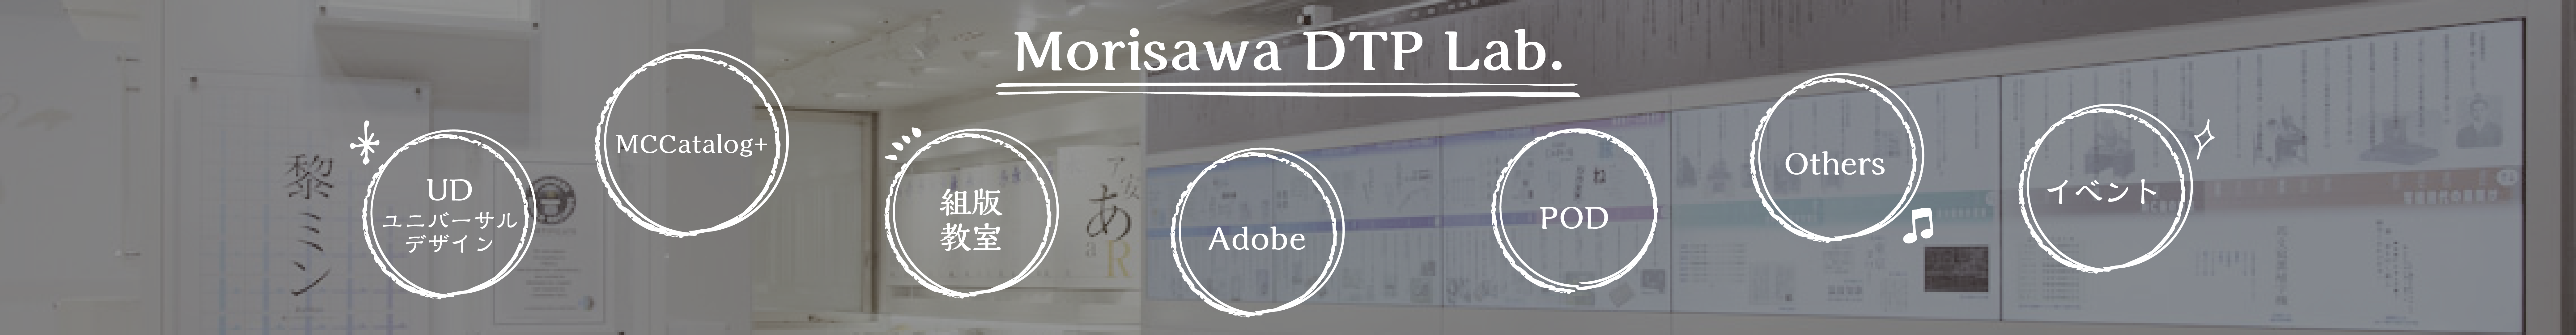 Morisawa DTP Lab.